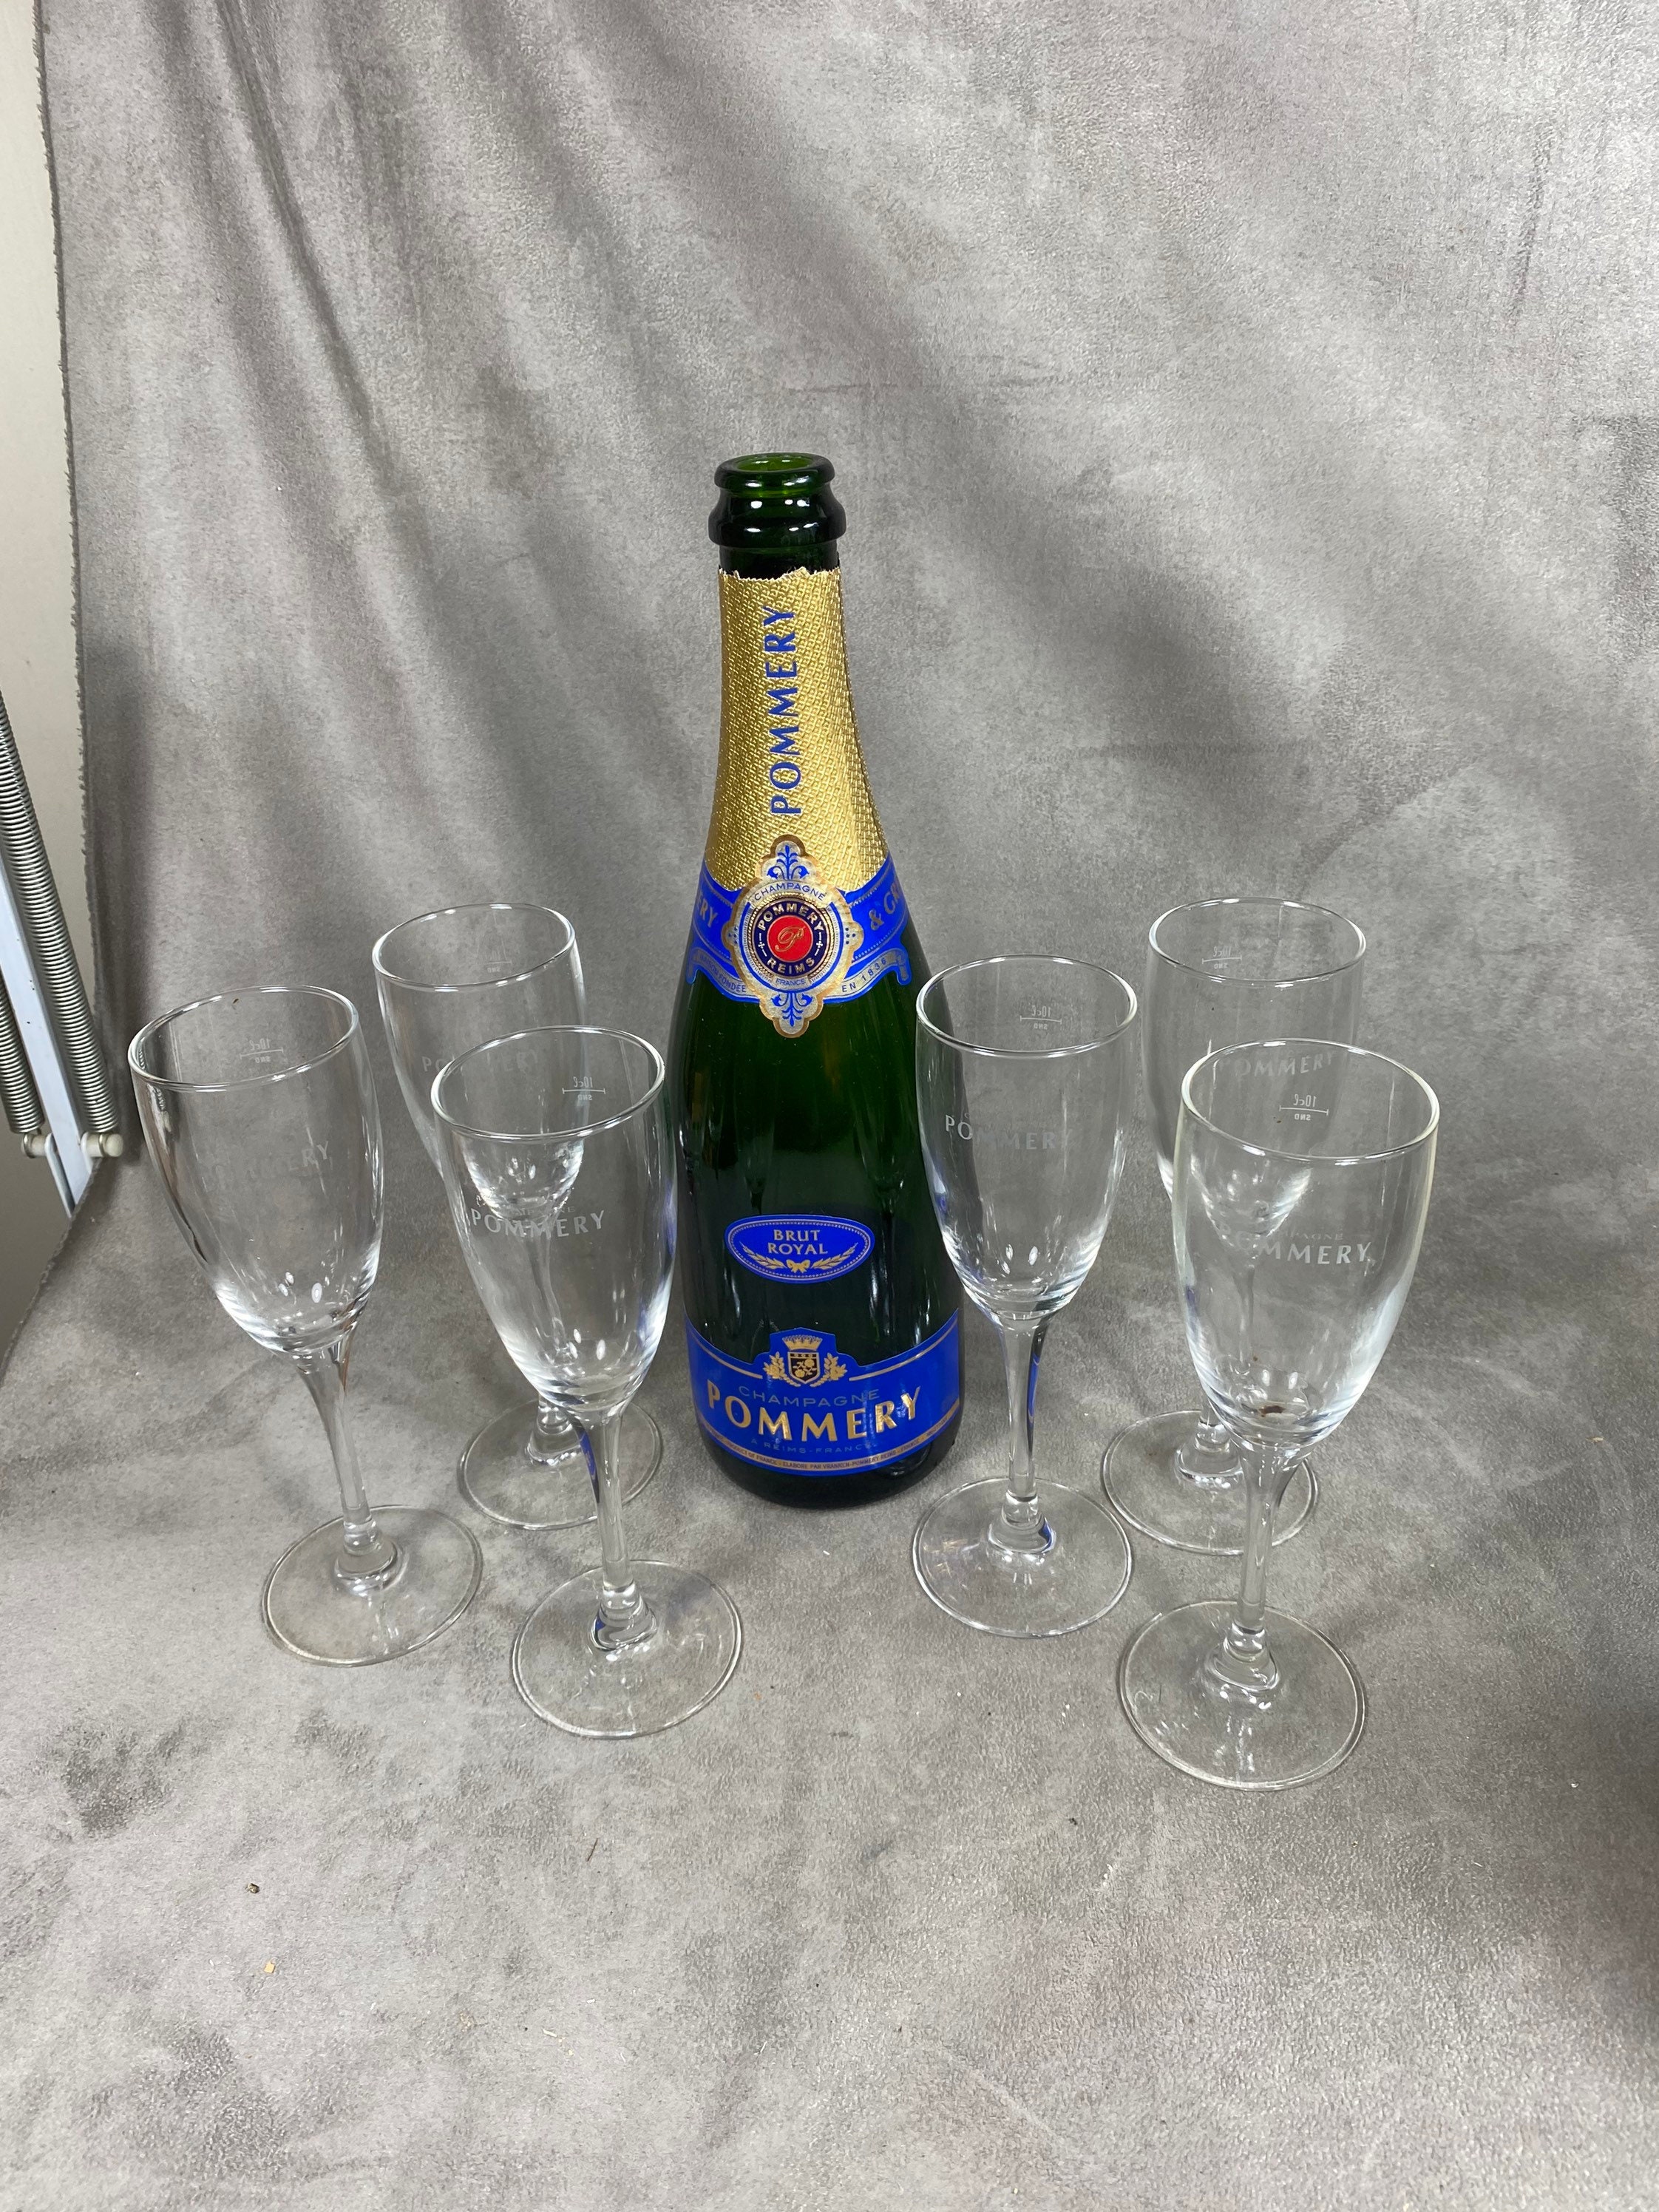 Lot de 6 Flutes en Verre Champagne Pommery Vintage Made in France